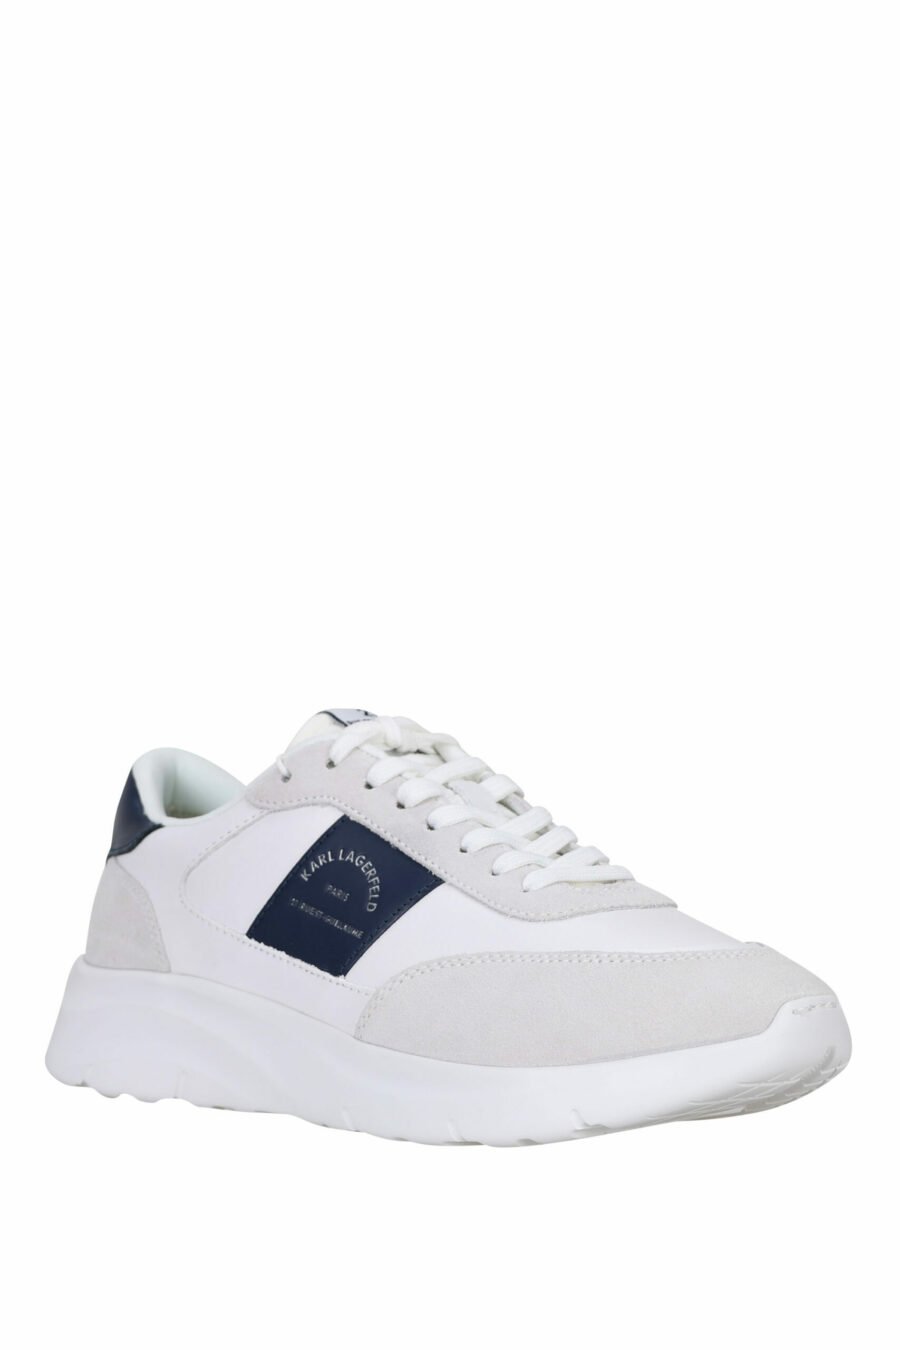 Zapatillas blancas mix "serger" con logo "rue st guillaume" en parche azul - 5059529365249 1 scaled